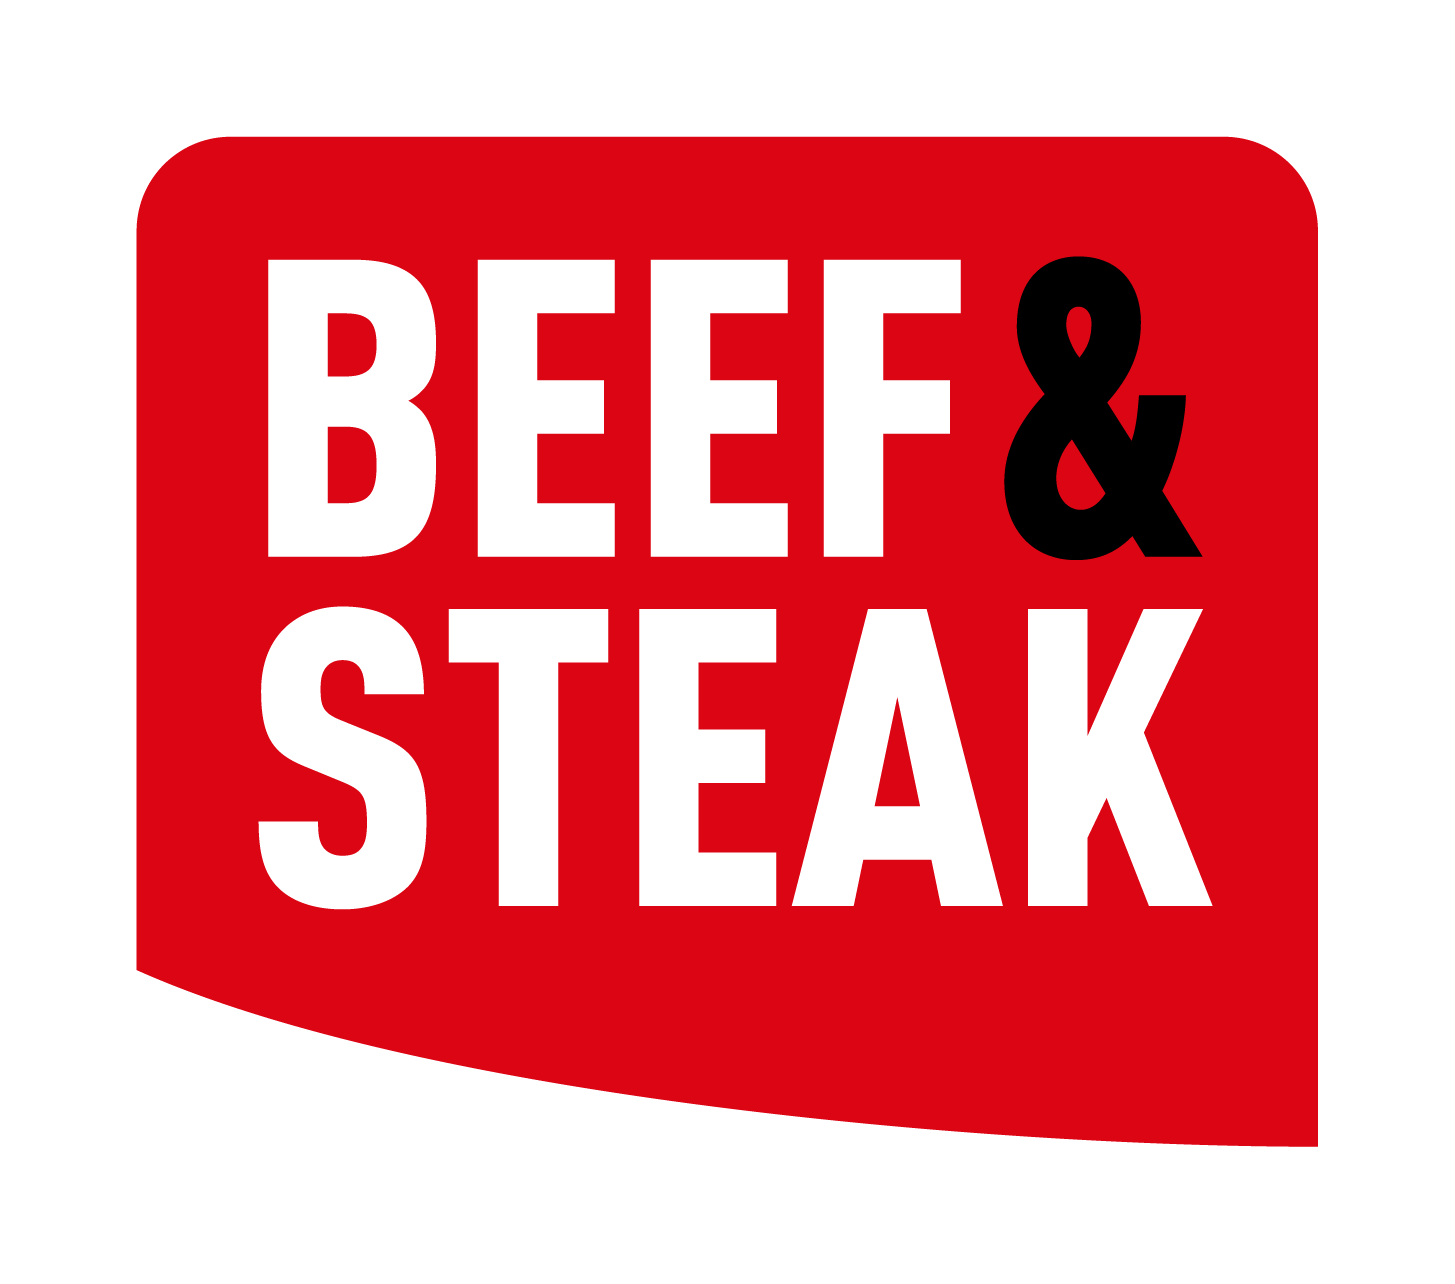 Kalkoenpoot - & Steak